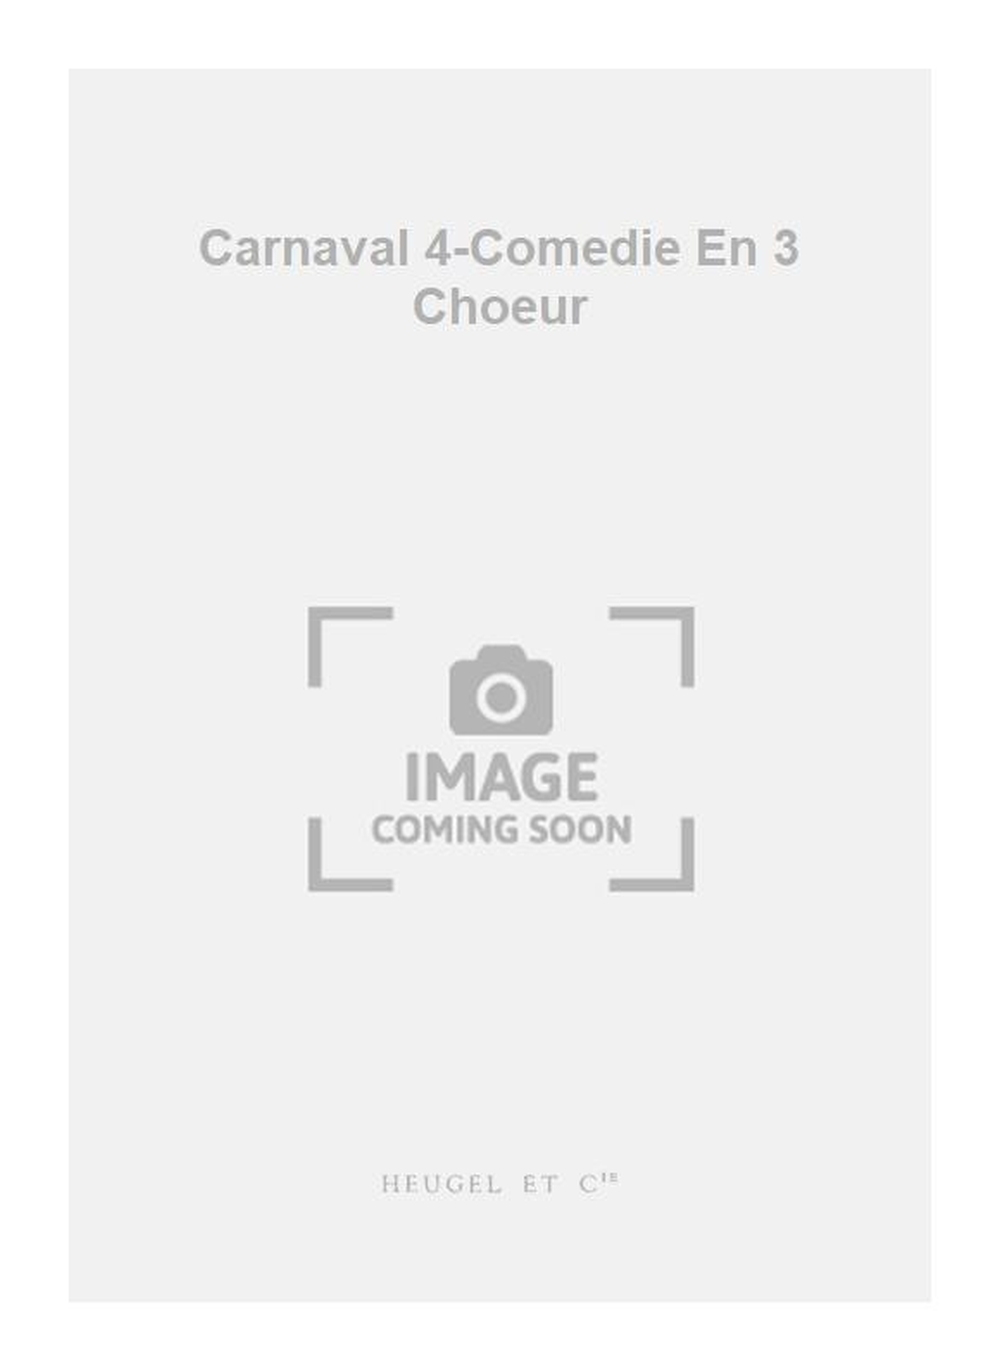 Reibel: Carnaval 4-Comedie En 3 Choeur